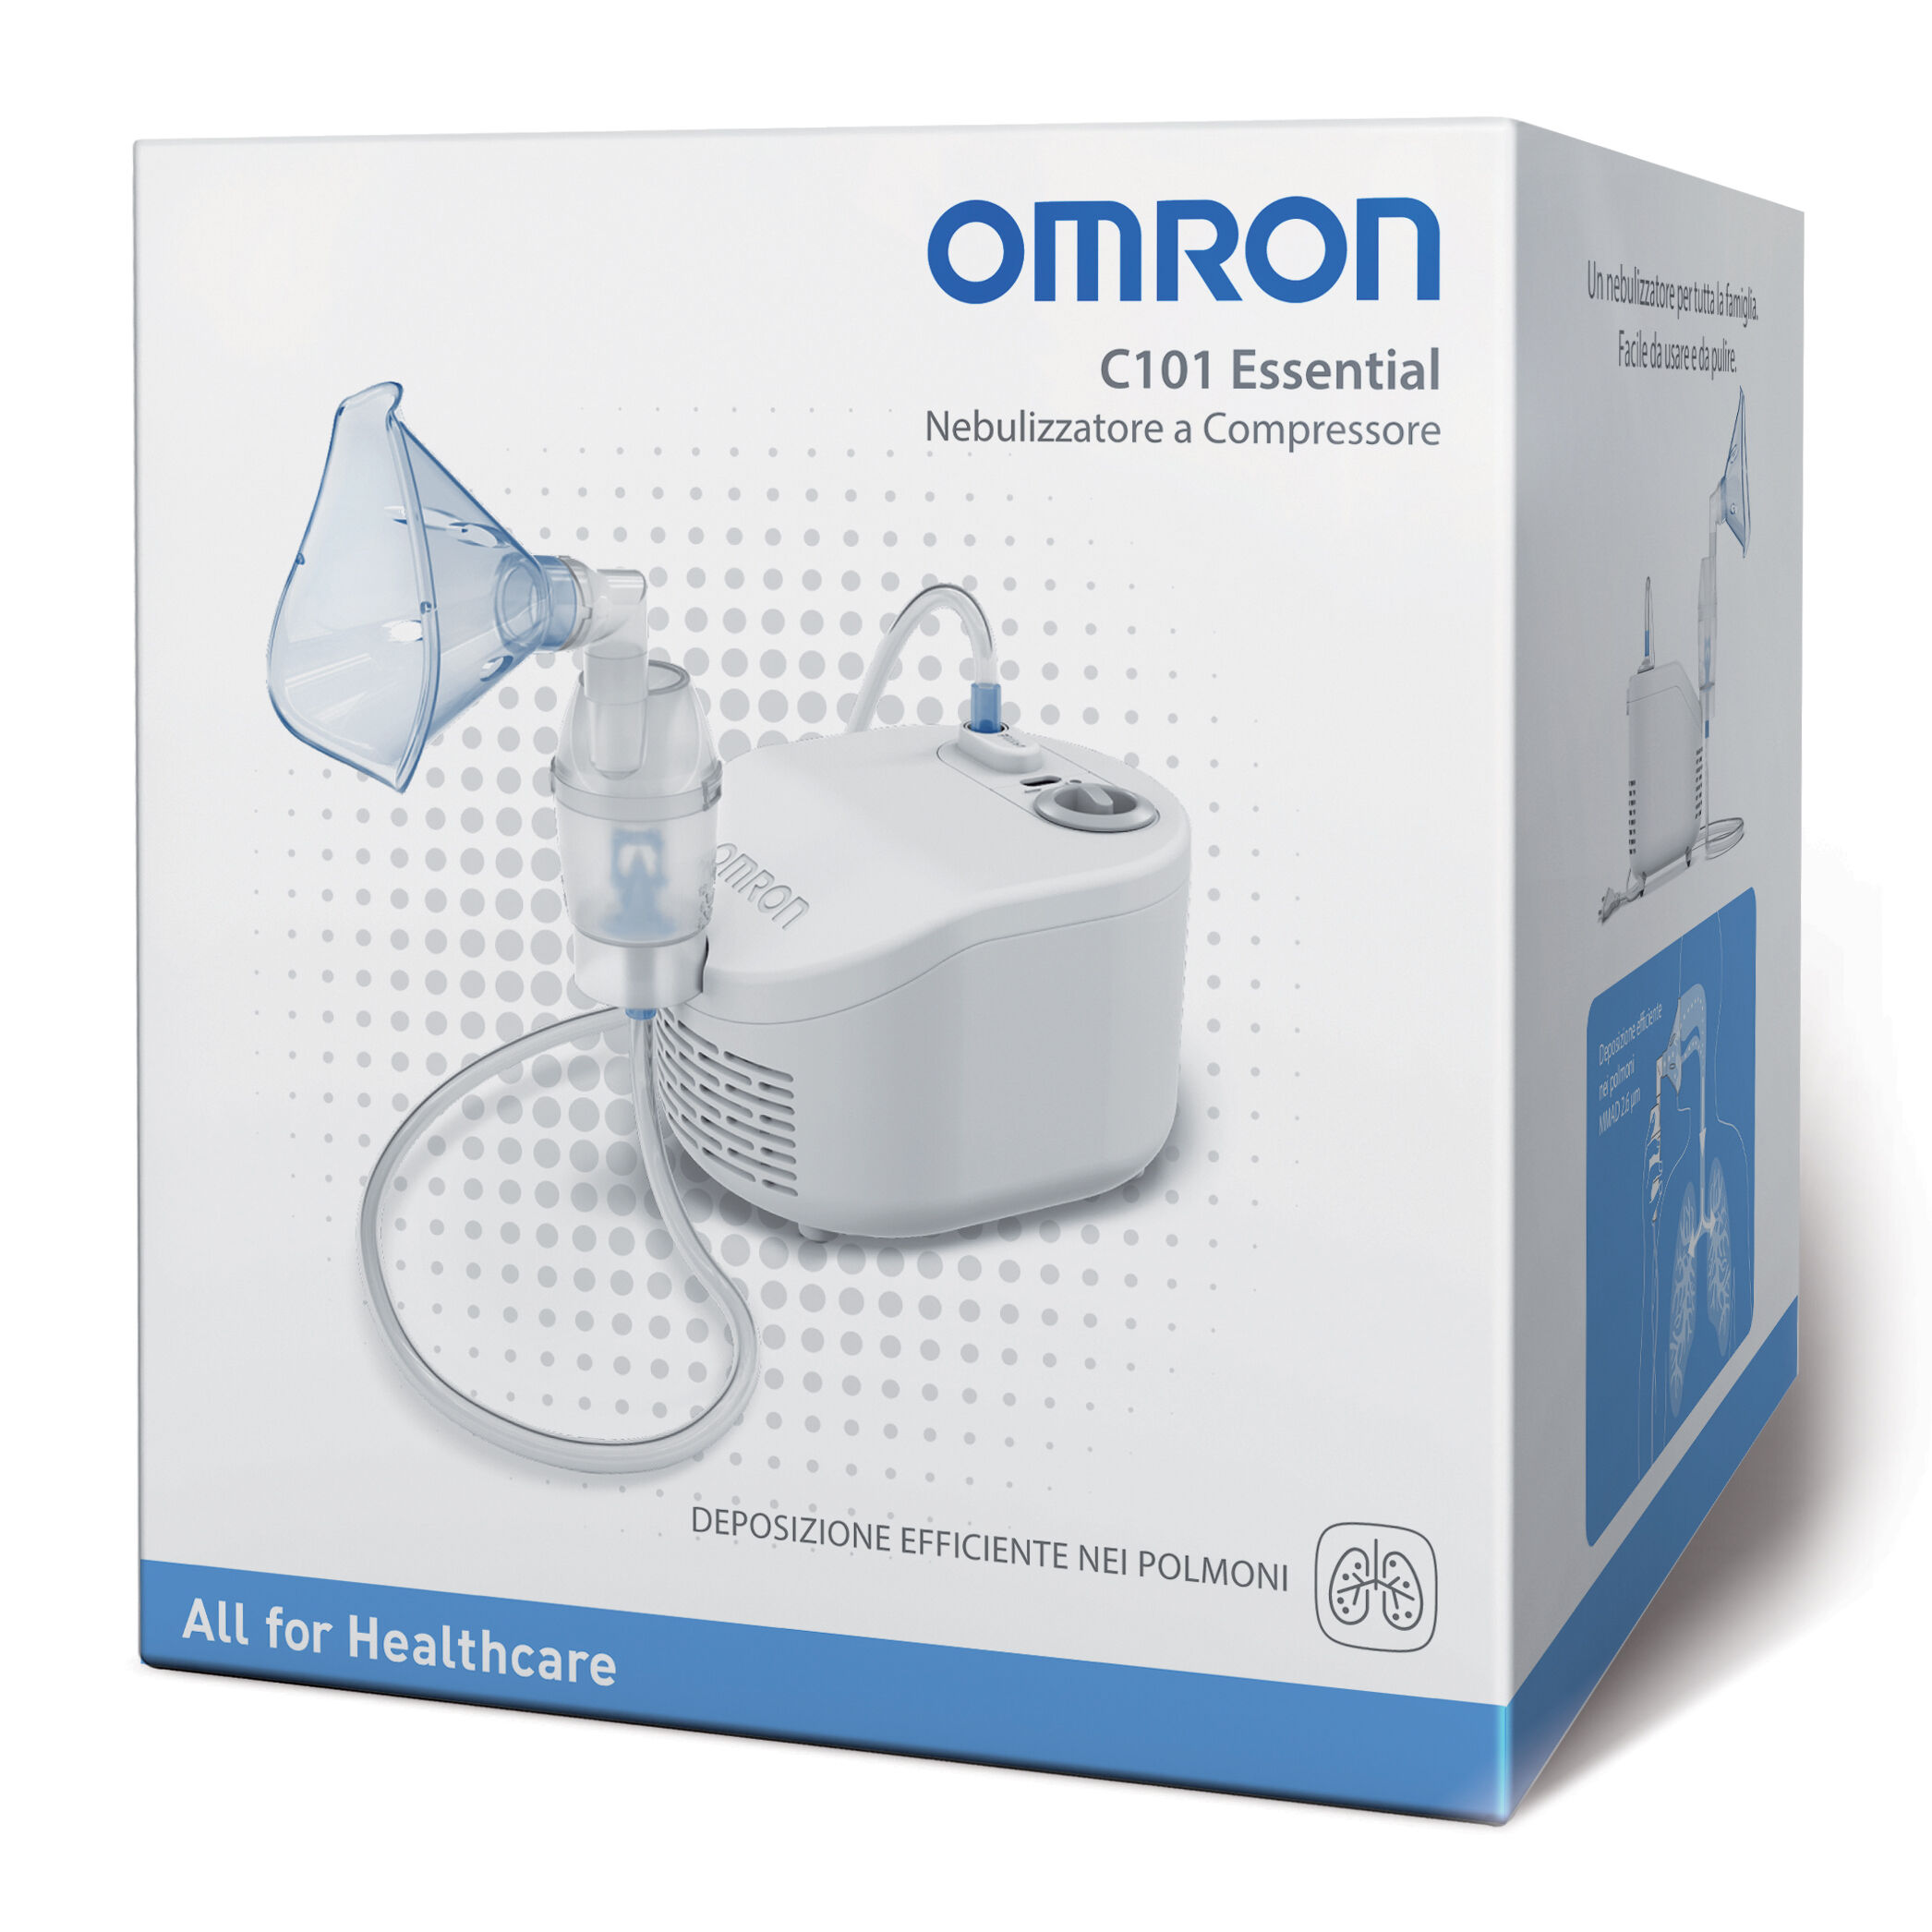 Corman Omron Nebulizzatore Essential A Pistone C101